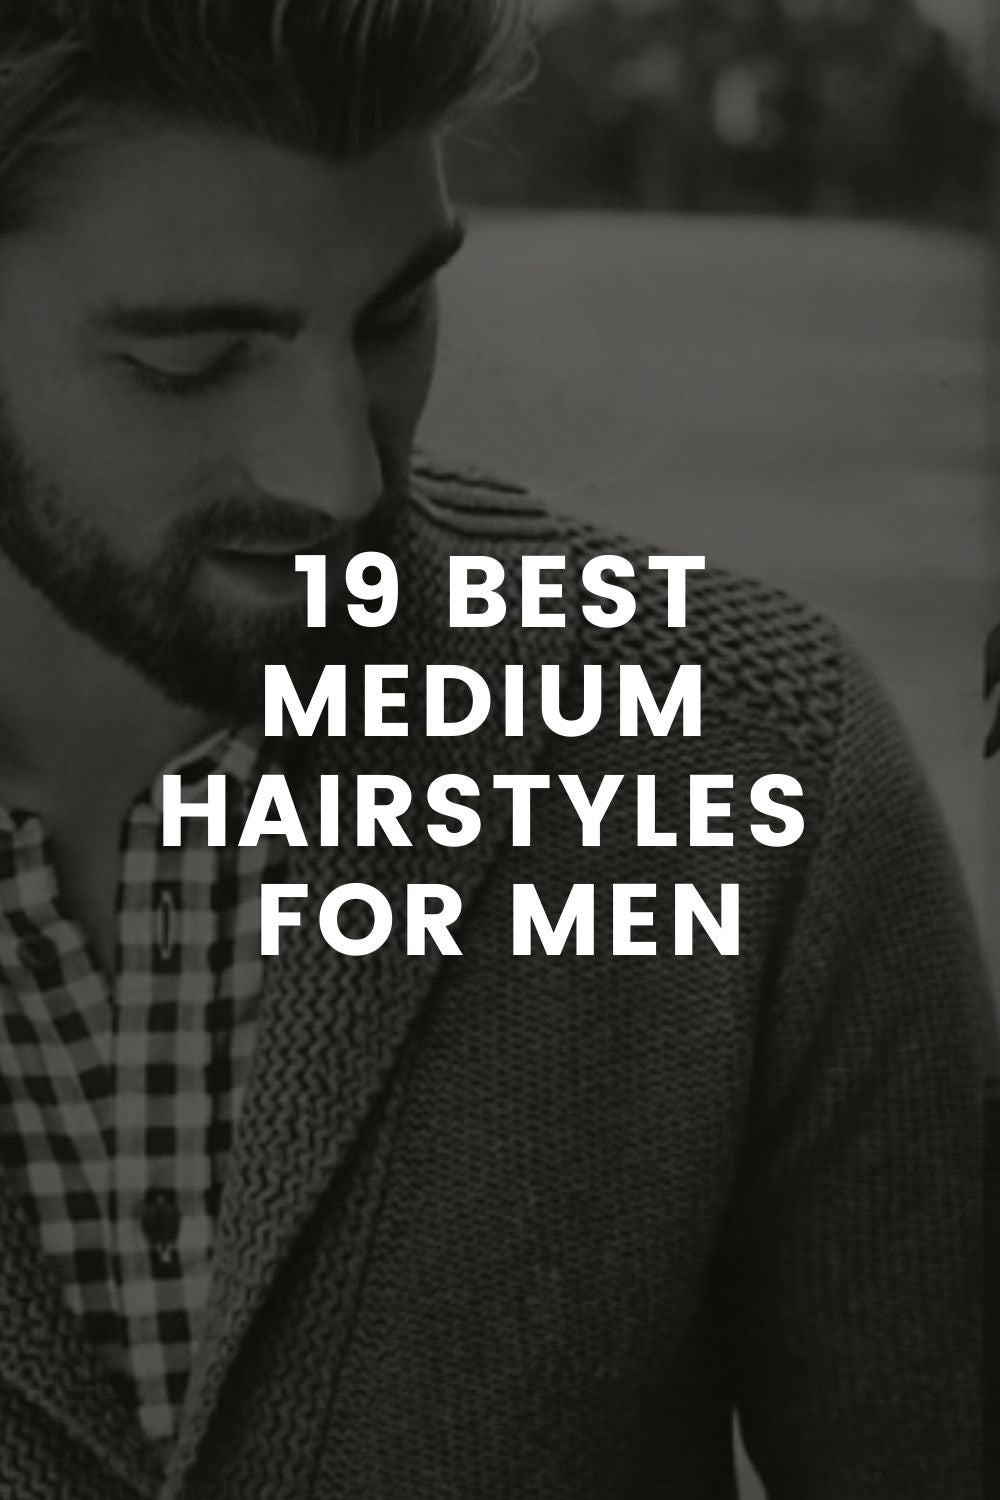 Medium hairstyles men - pushjoker